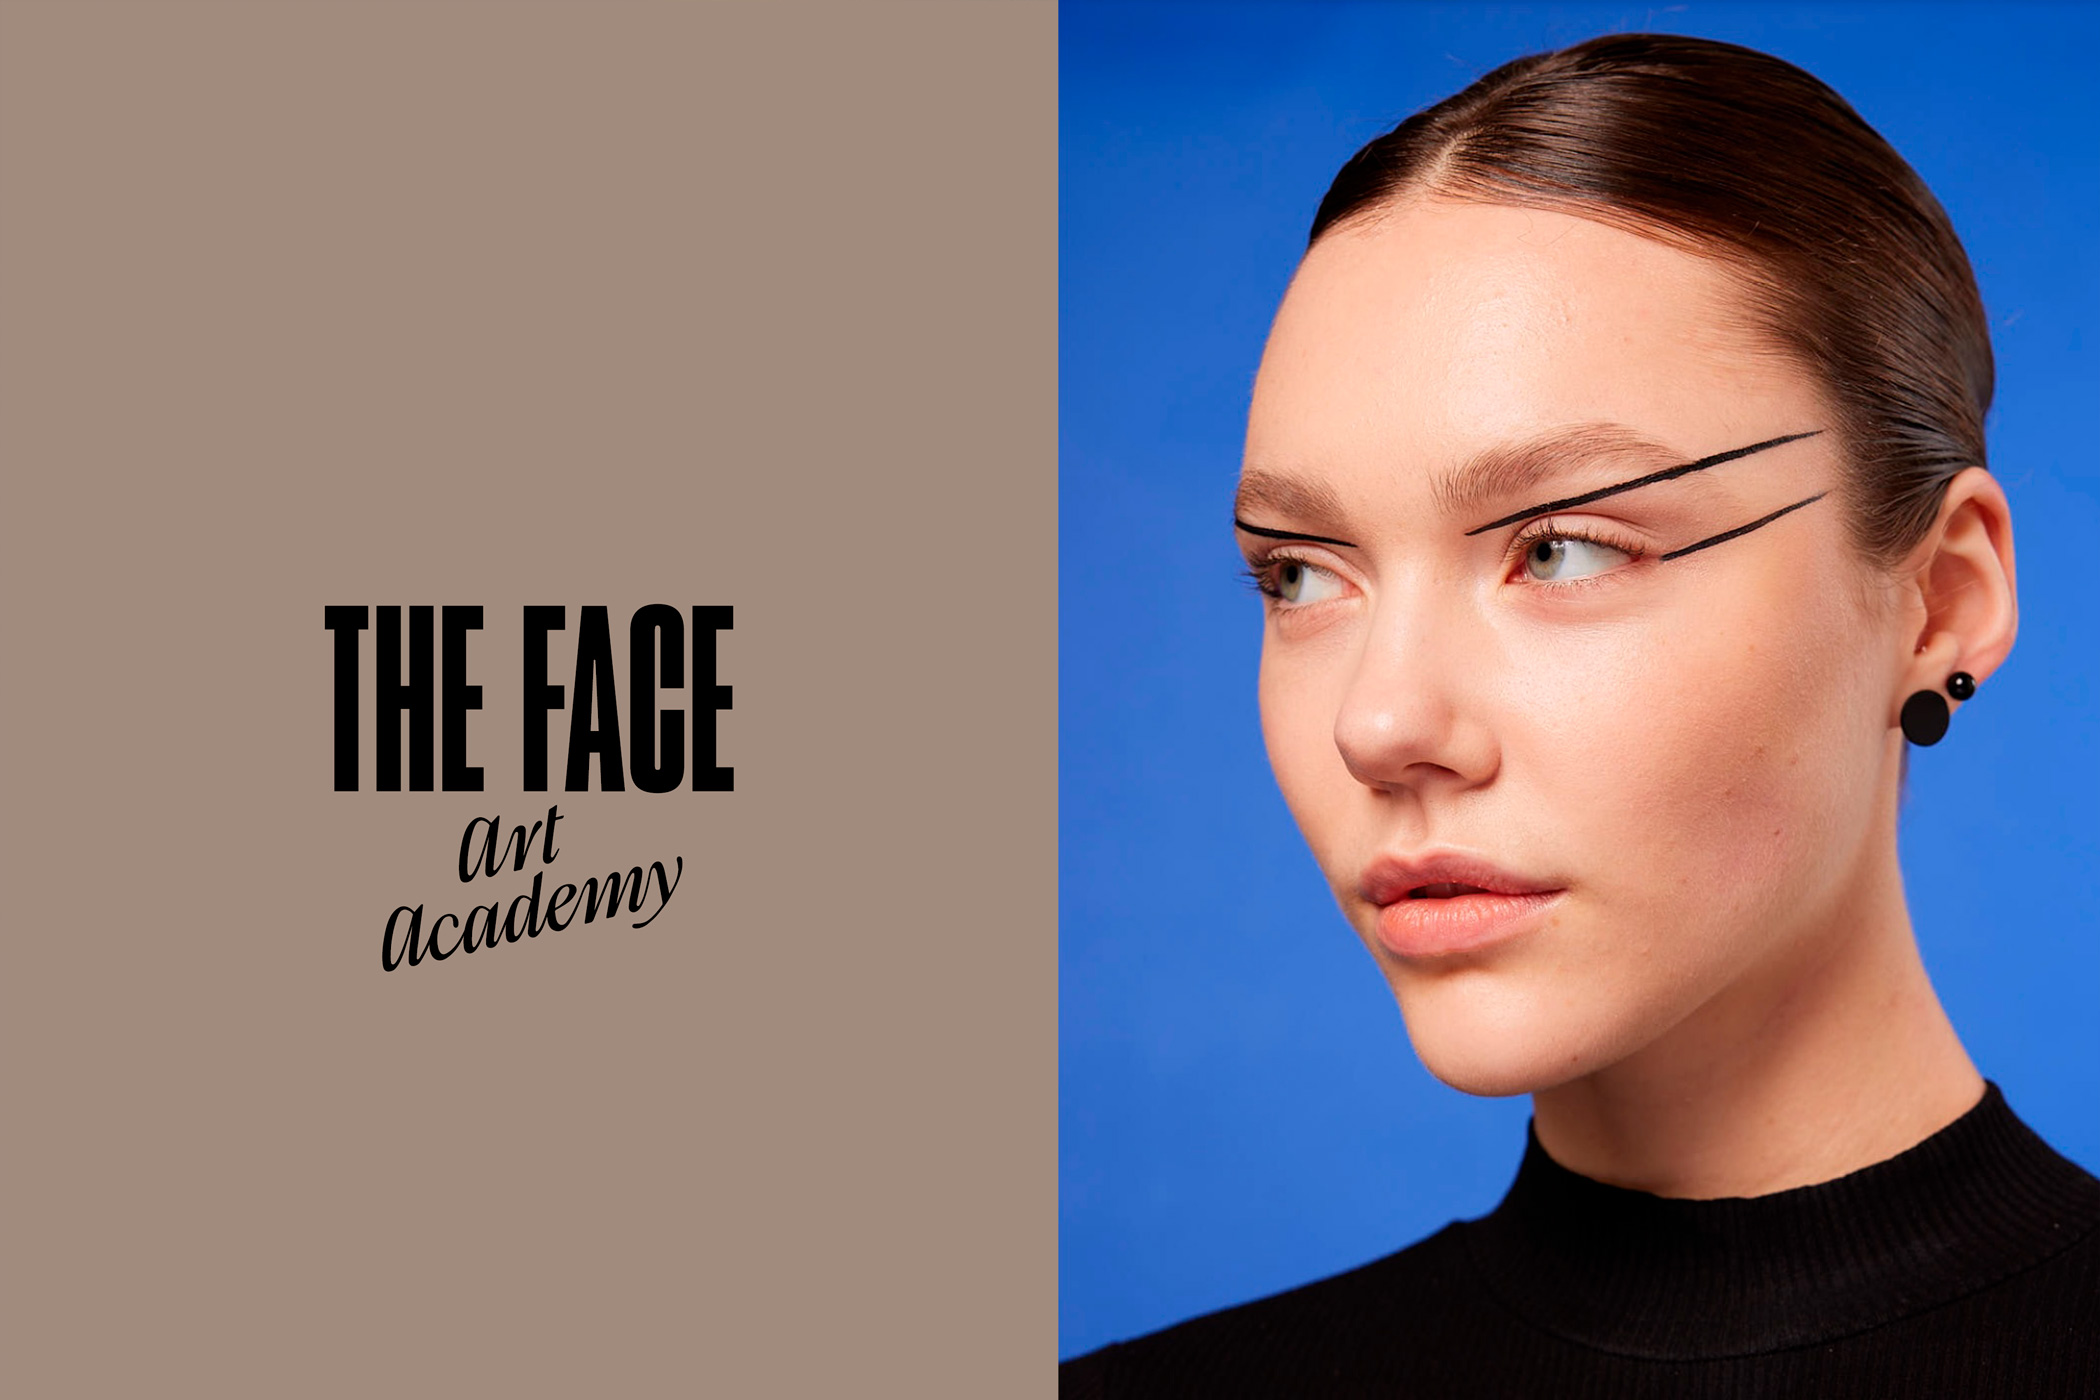  THE FACE – art academy